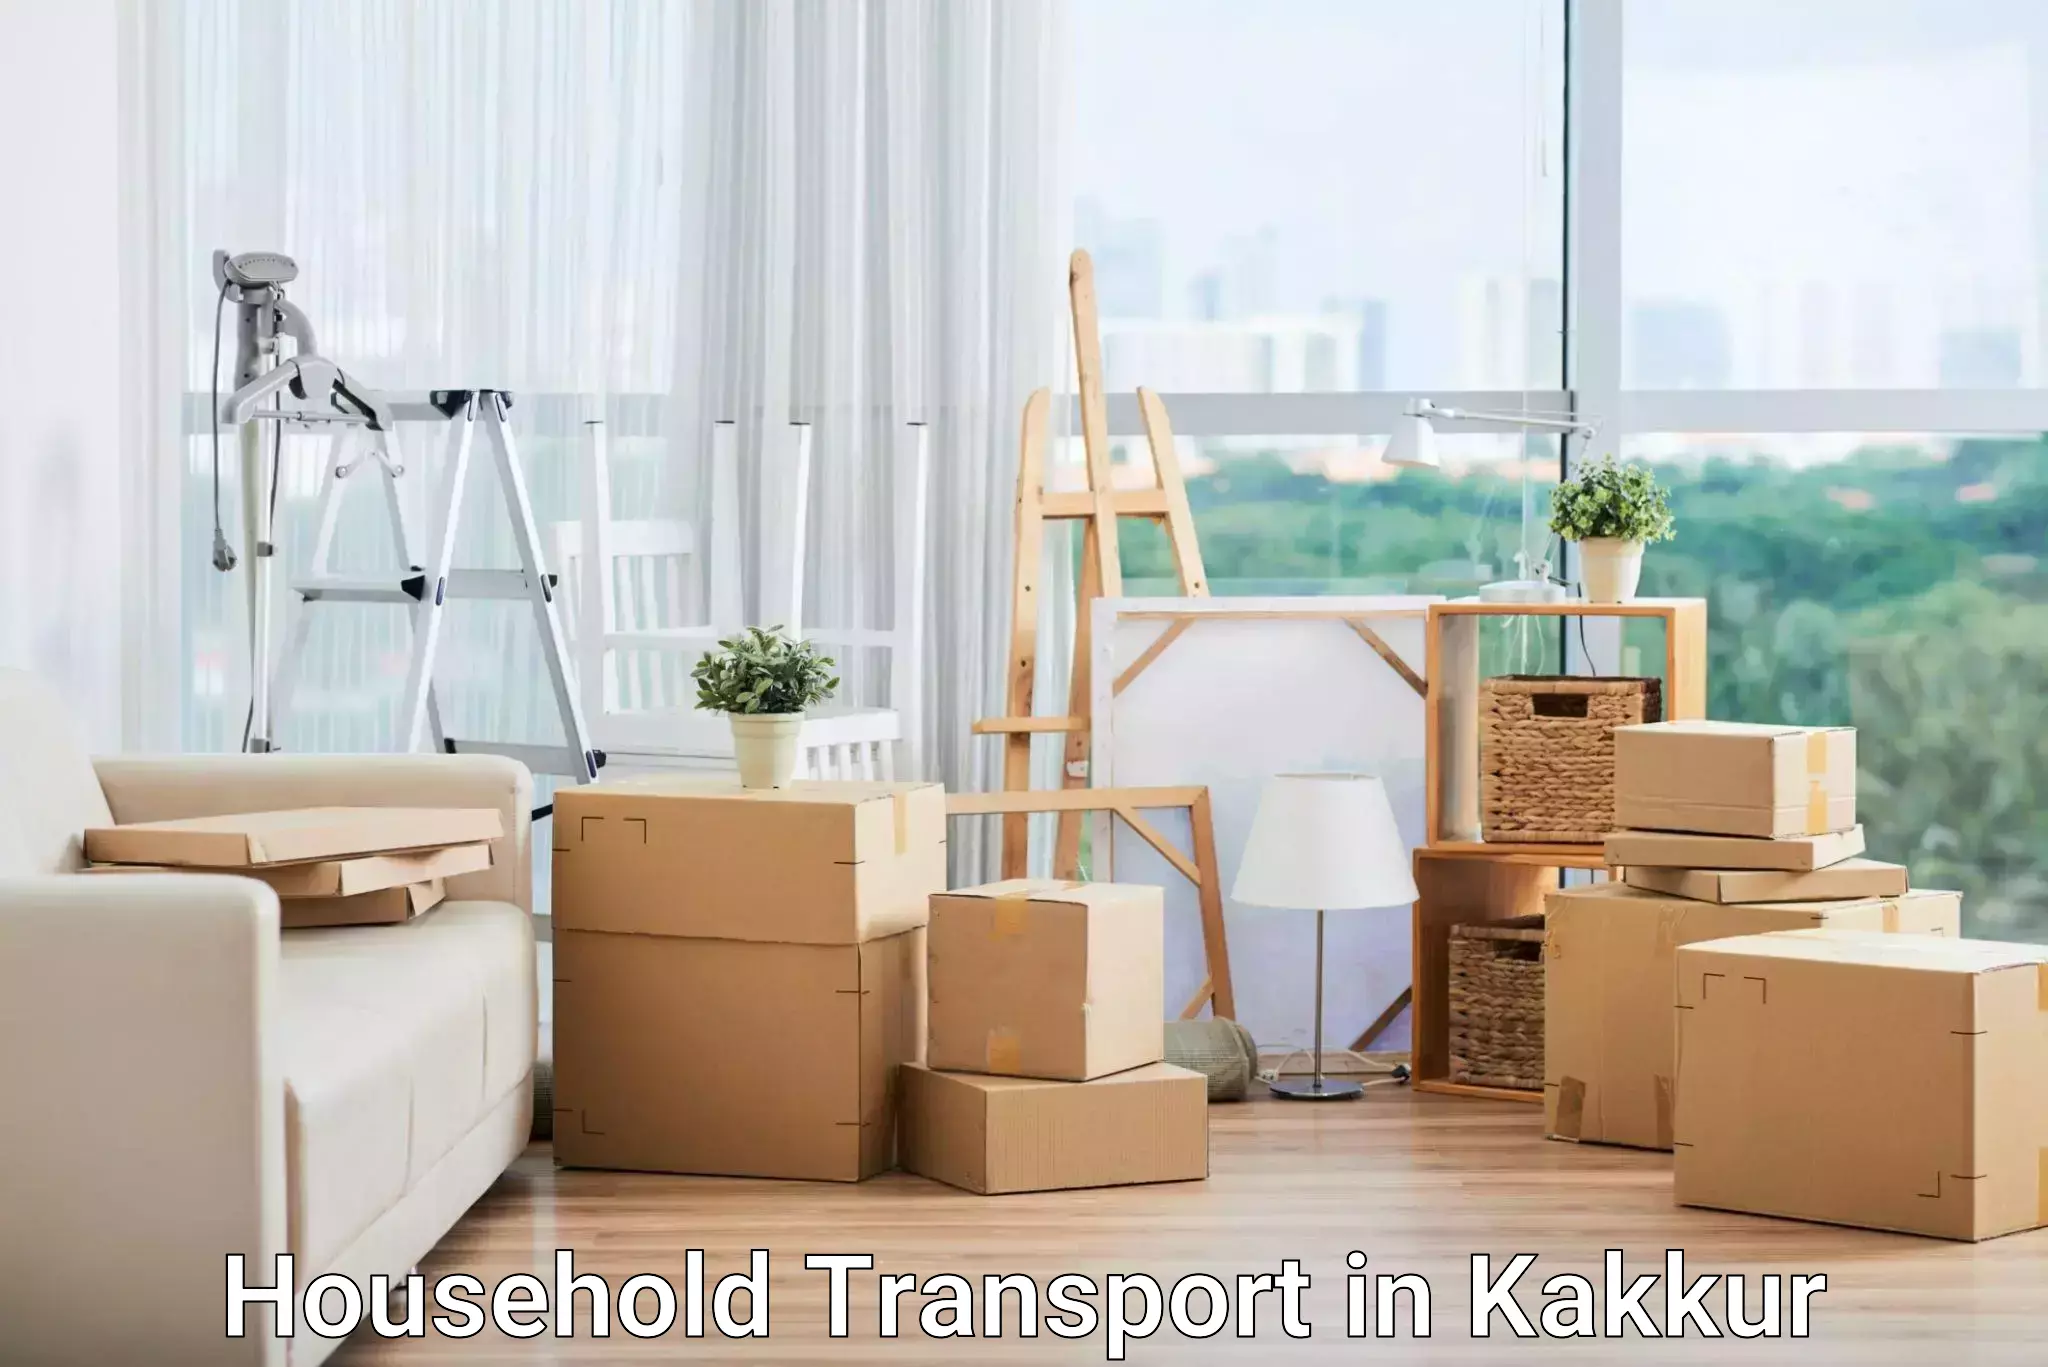 Quality household transport in Kakkur